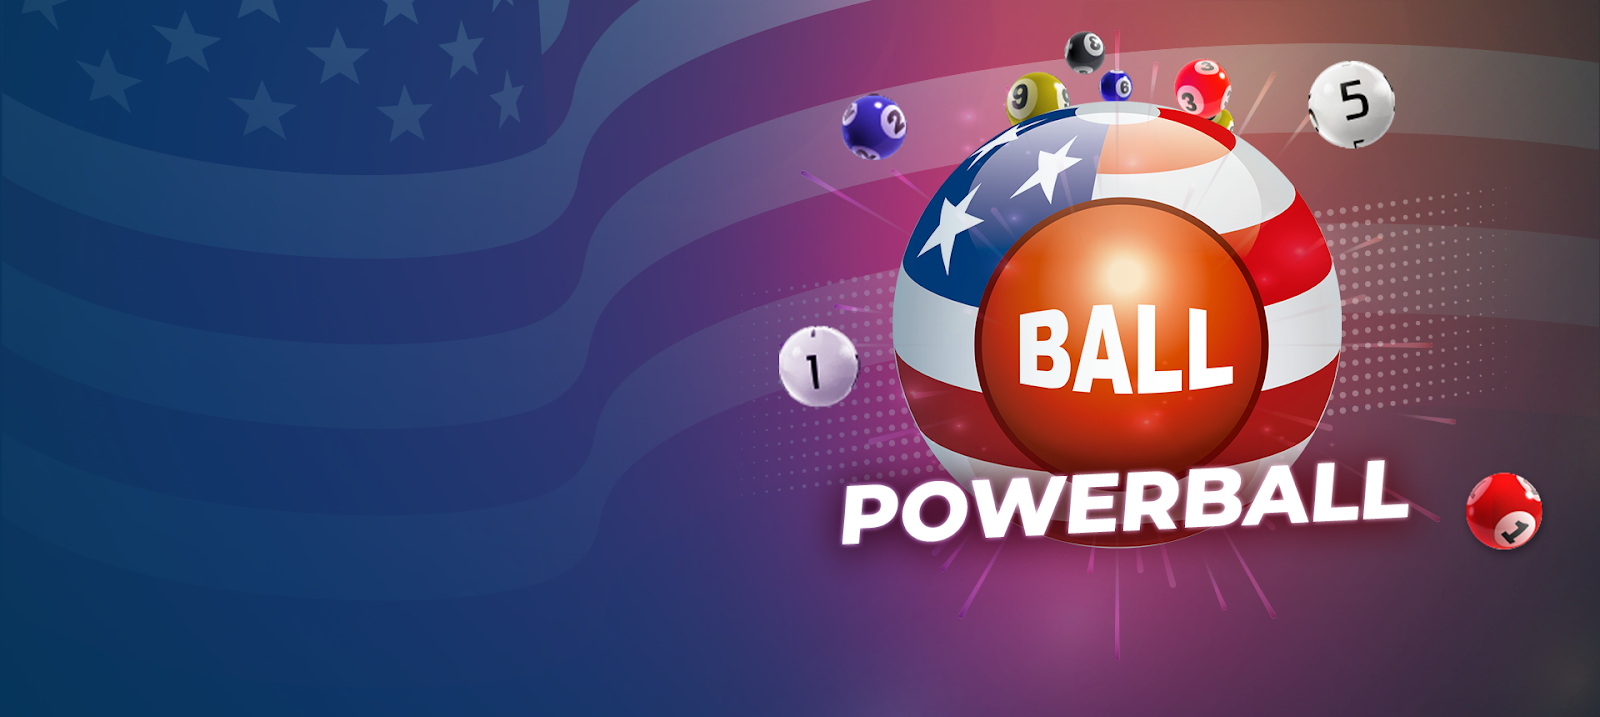 ¿El Jackpot de US$101m de Powerball no es suficiente para ti? Entonces, ¡poténcialo a US$100m GRATIS!